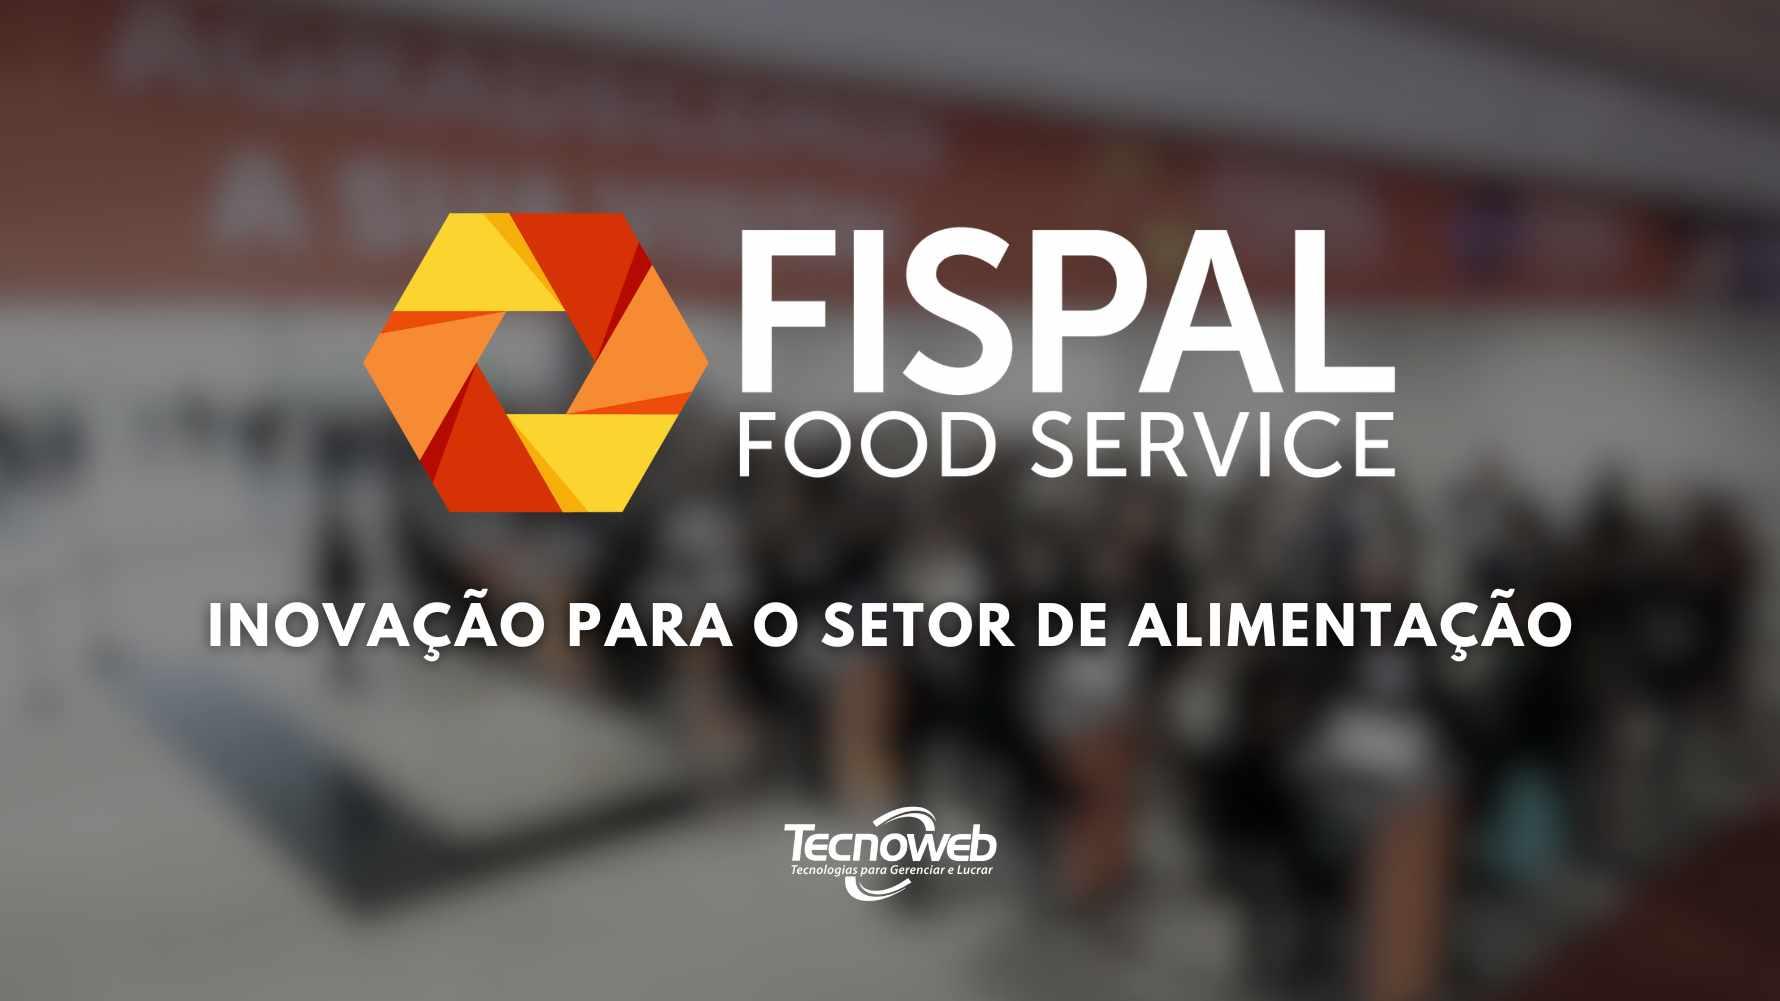 fispal food service inovação para o setor de alimentos